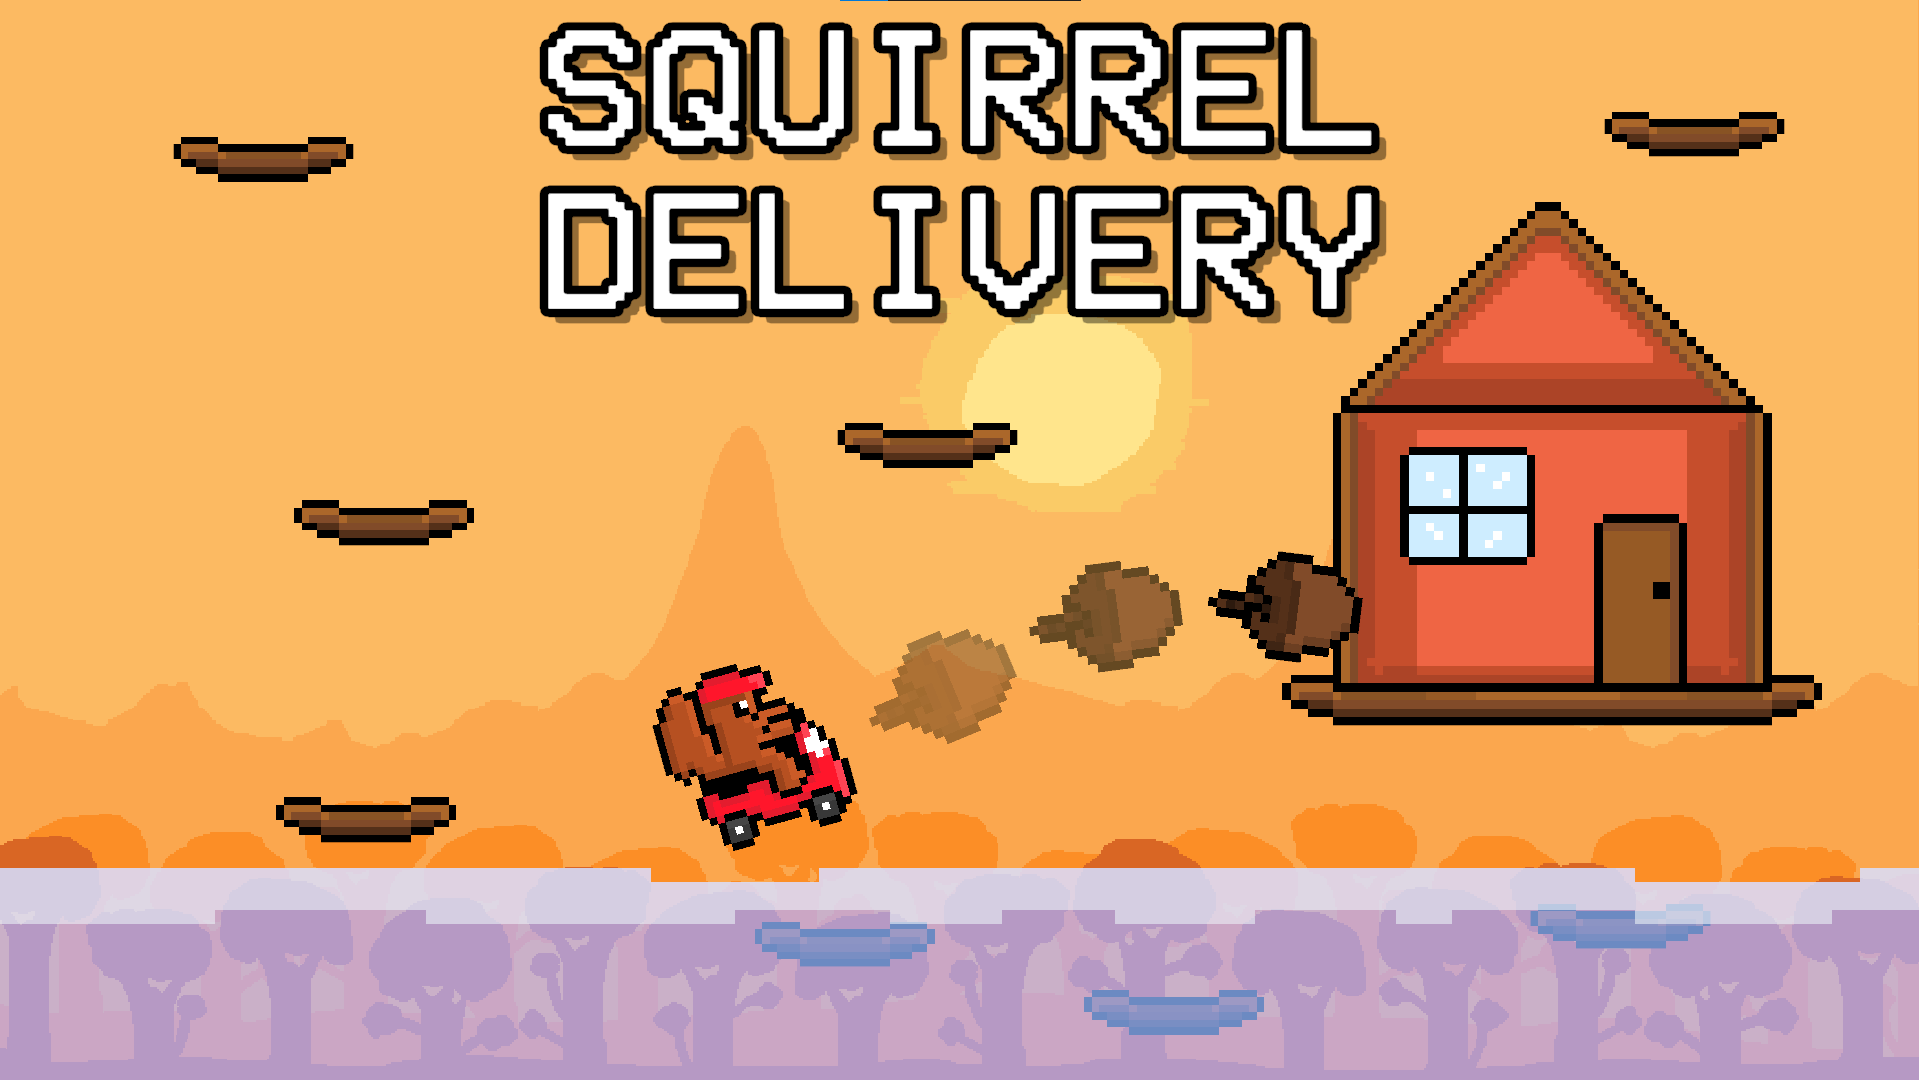 Squirrel Delivery